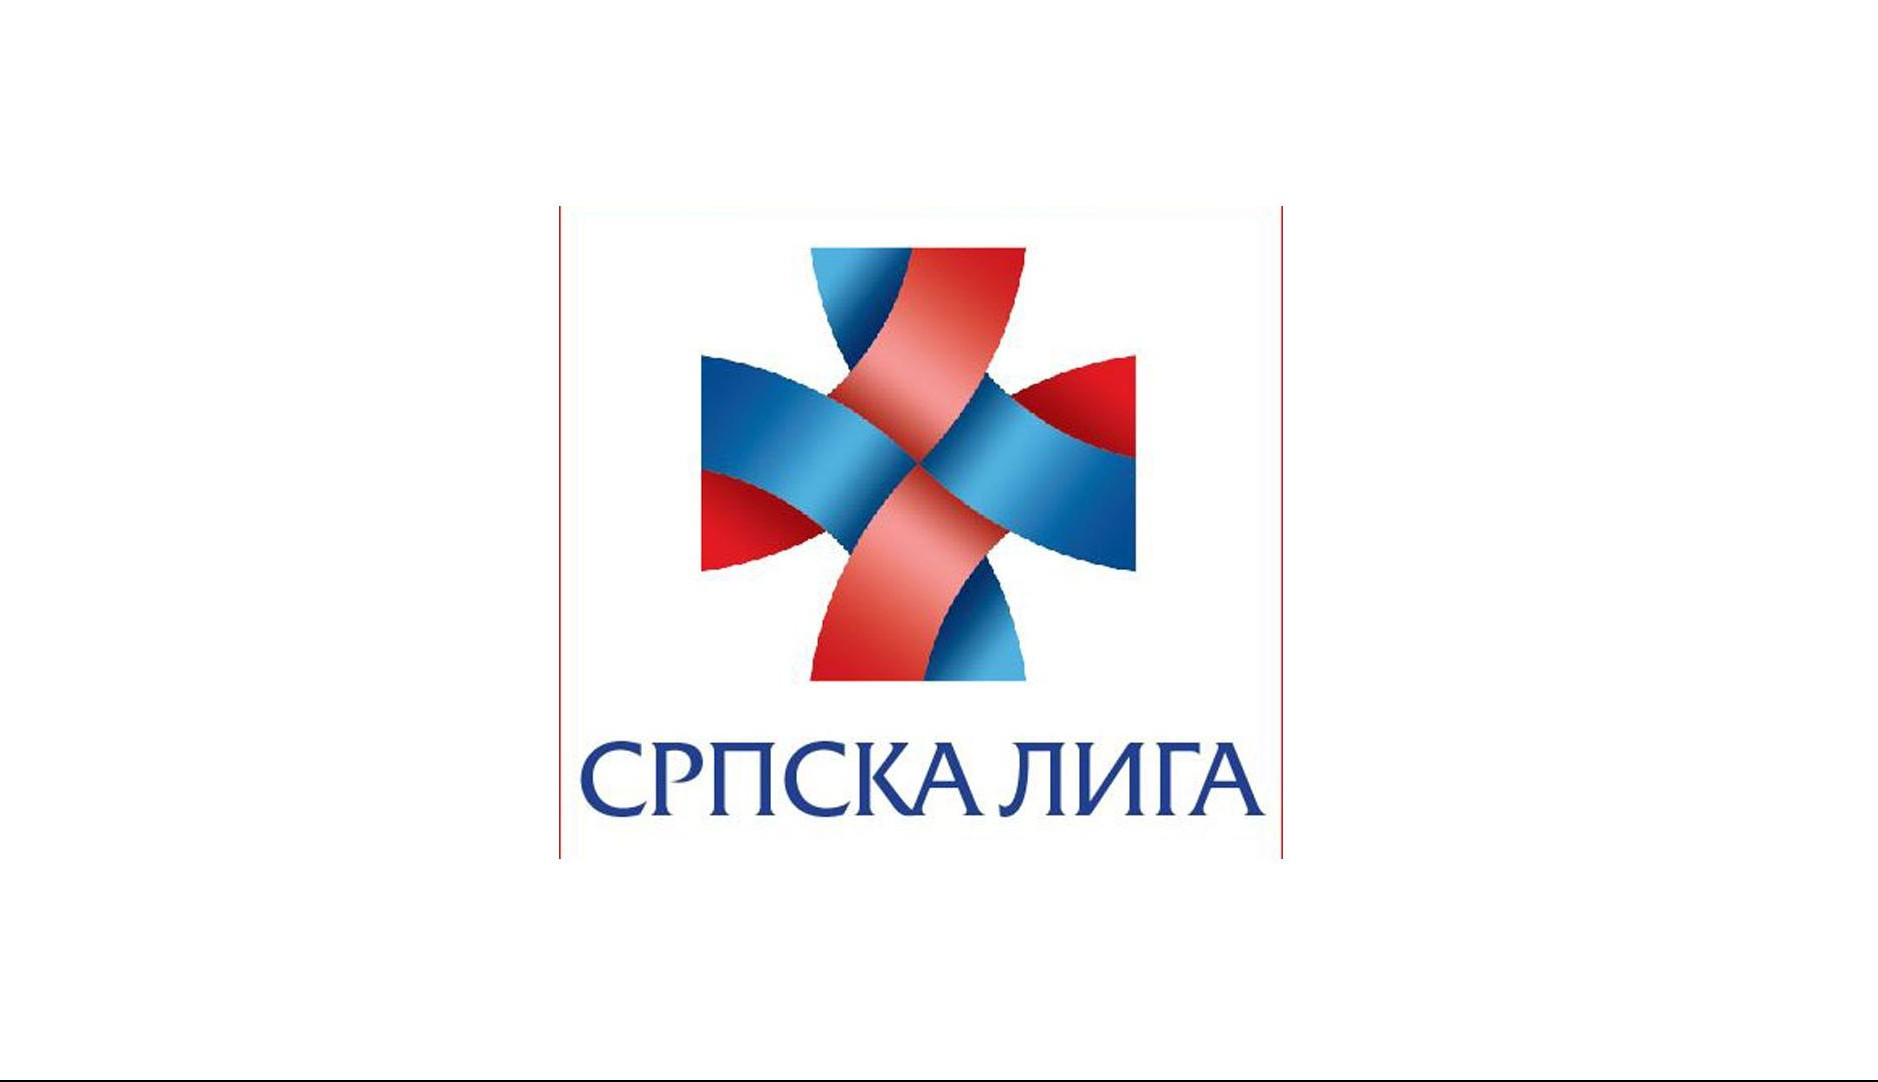 Srpska liga: Srbija da osnuje Centar za borbu protiv propagande i dezinformisanja javnosti